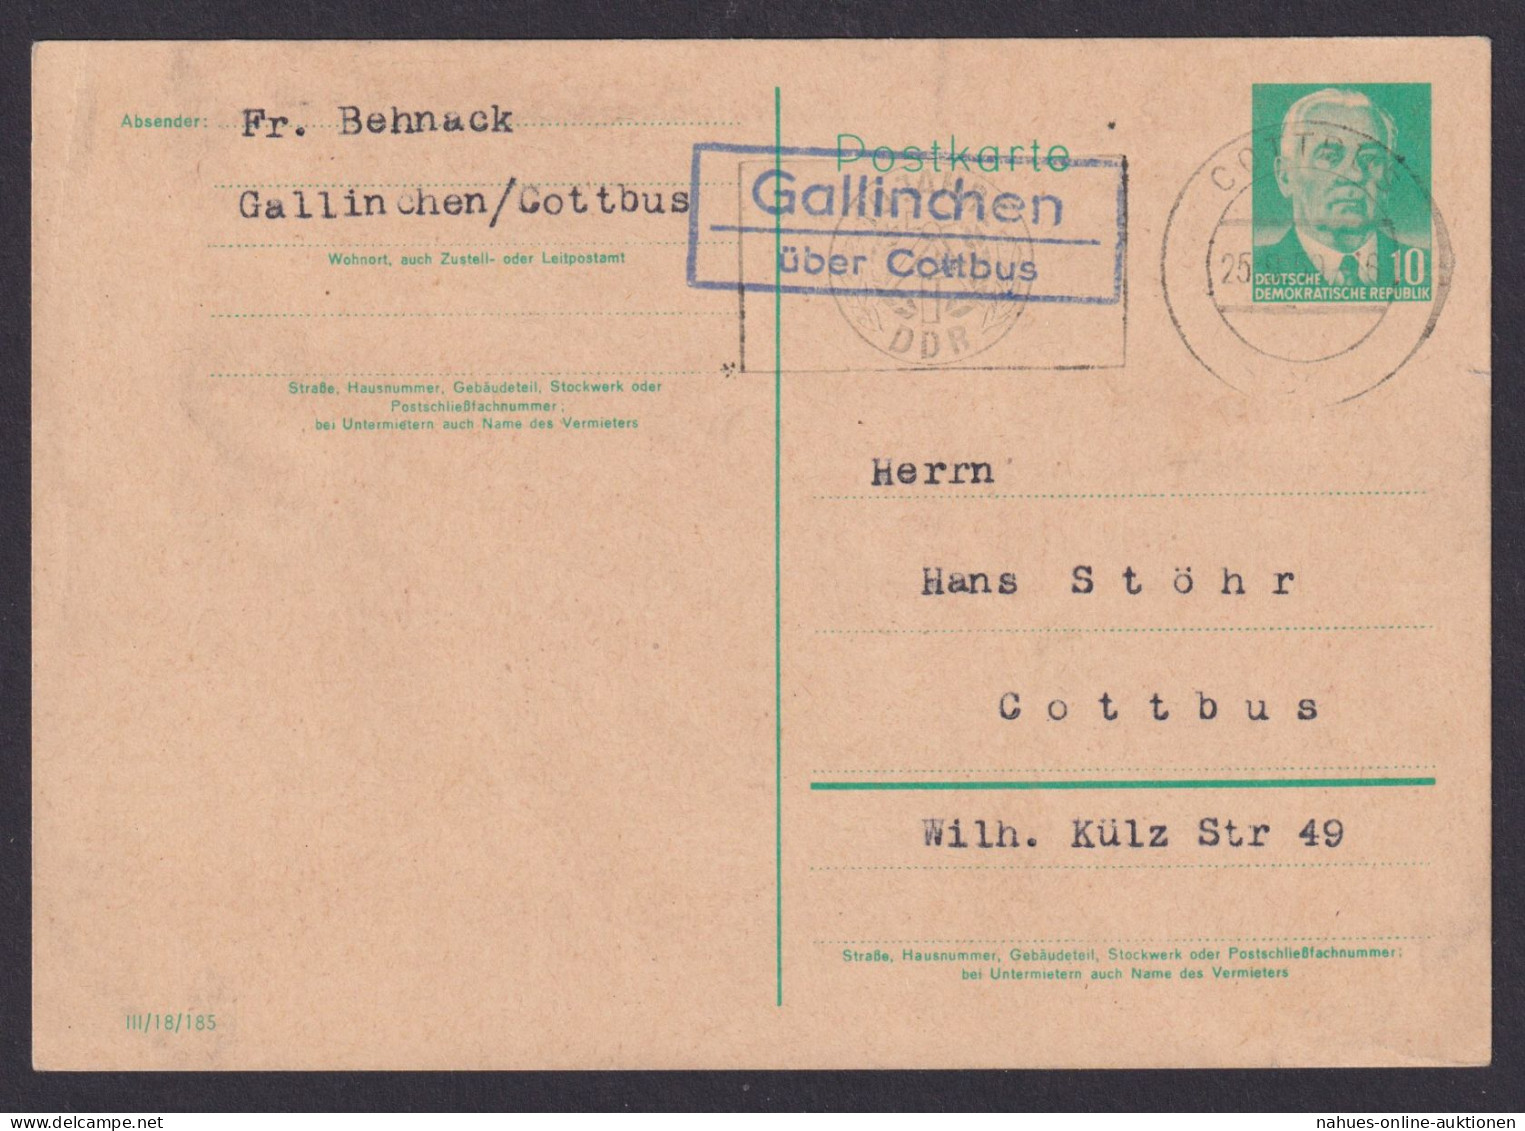 Gallinchen über Cottbus Brandenburg DDR Ganzsache Landpoststempel N. Cottbus - Briefe U. Dokumente